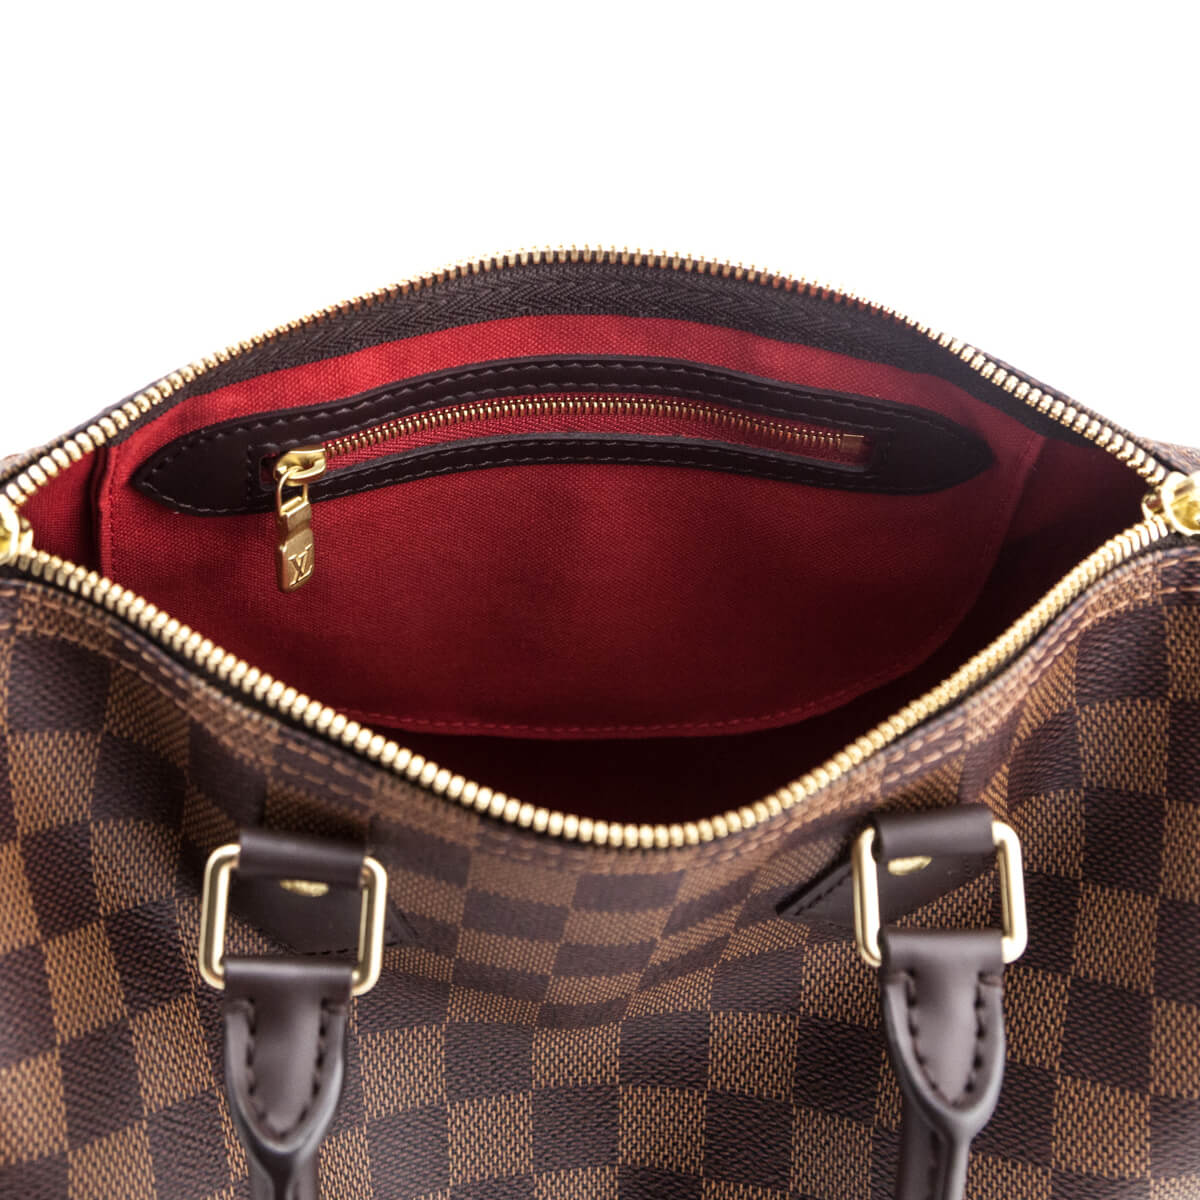 Louis Vuitton Damier Ebene Speedy Bandouliere 25 - LV Handbags Canada